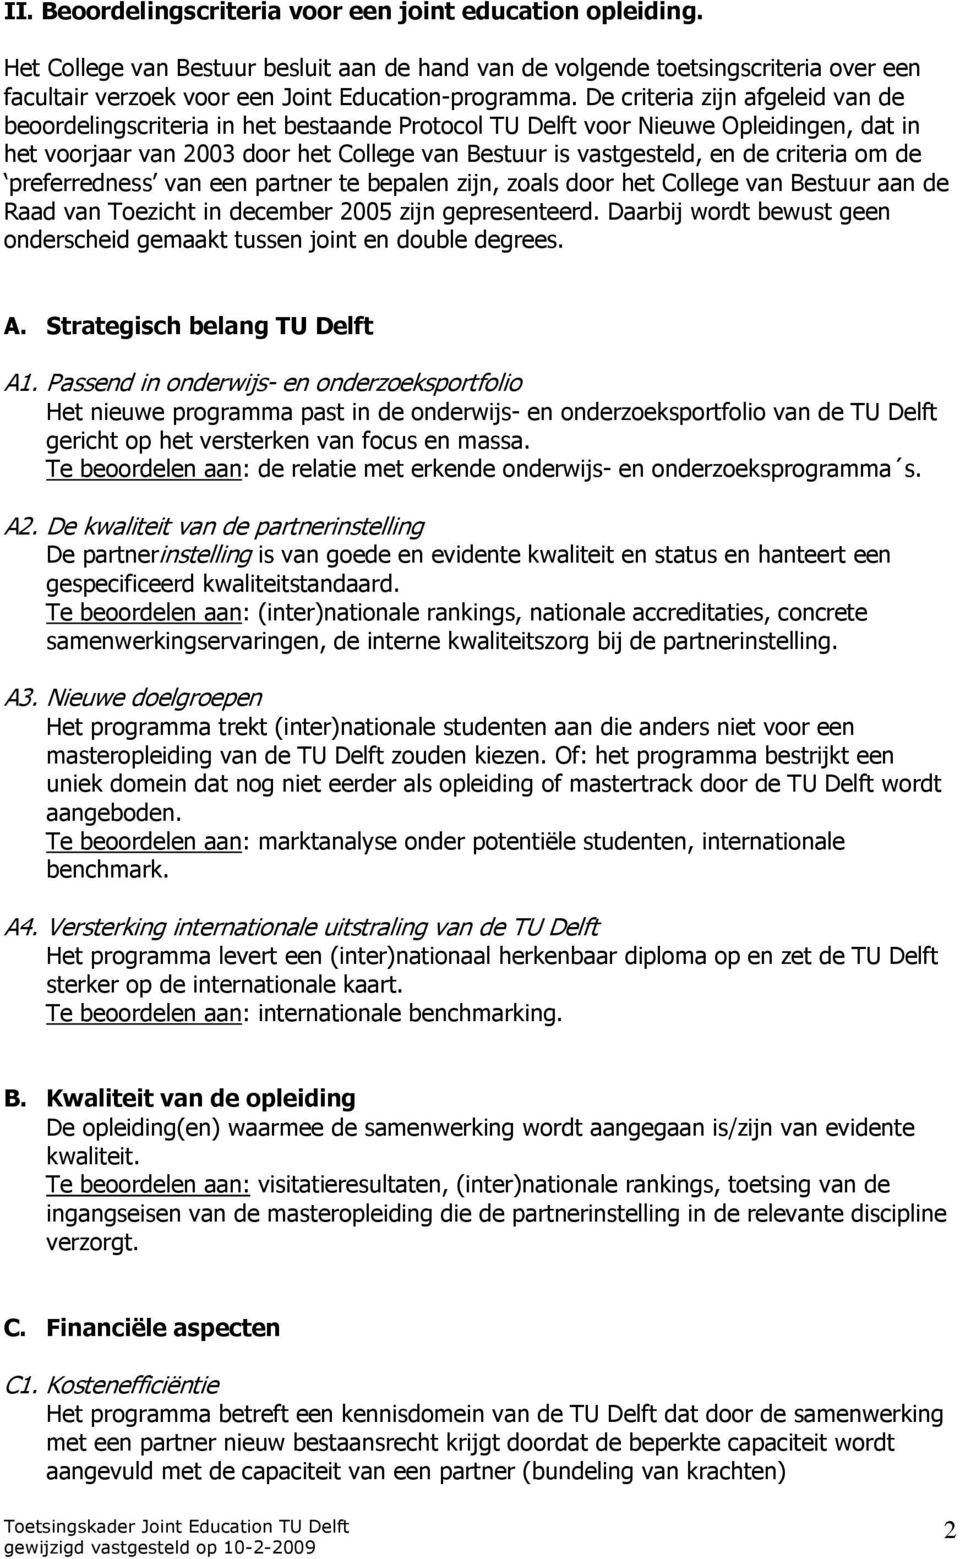 De criteria zijn afgeleid van de beoordelingscriteria in het bestaande Protocol TU Delft voor Nieuwe Opleidingen, dat in het voorjaar van 2003 door het College van Bestuur is vastgesteld, en de